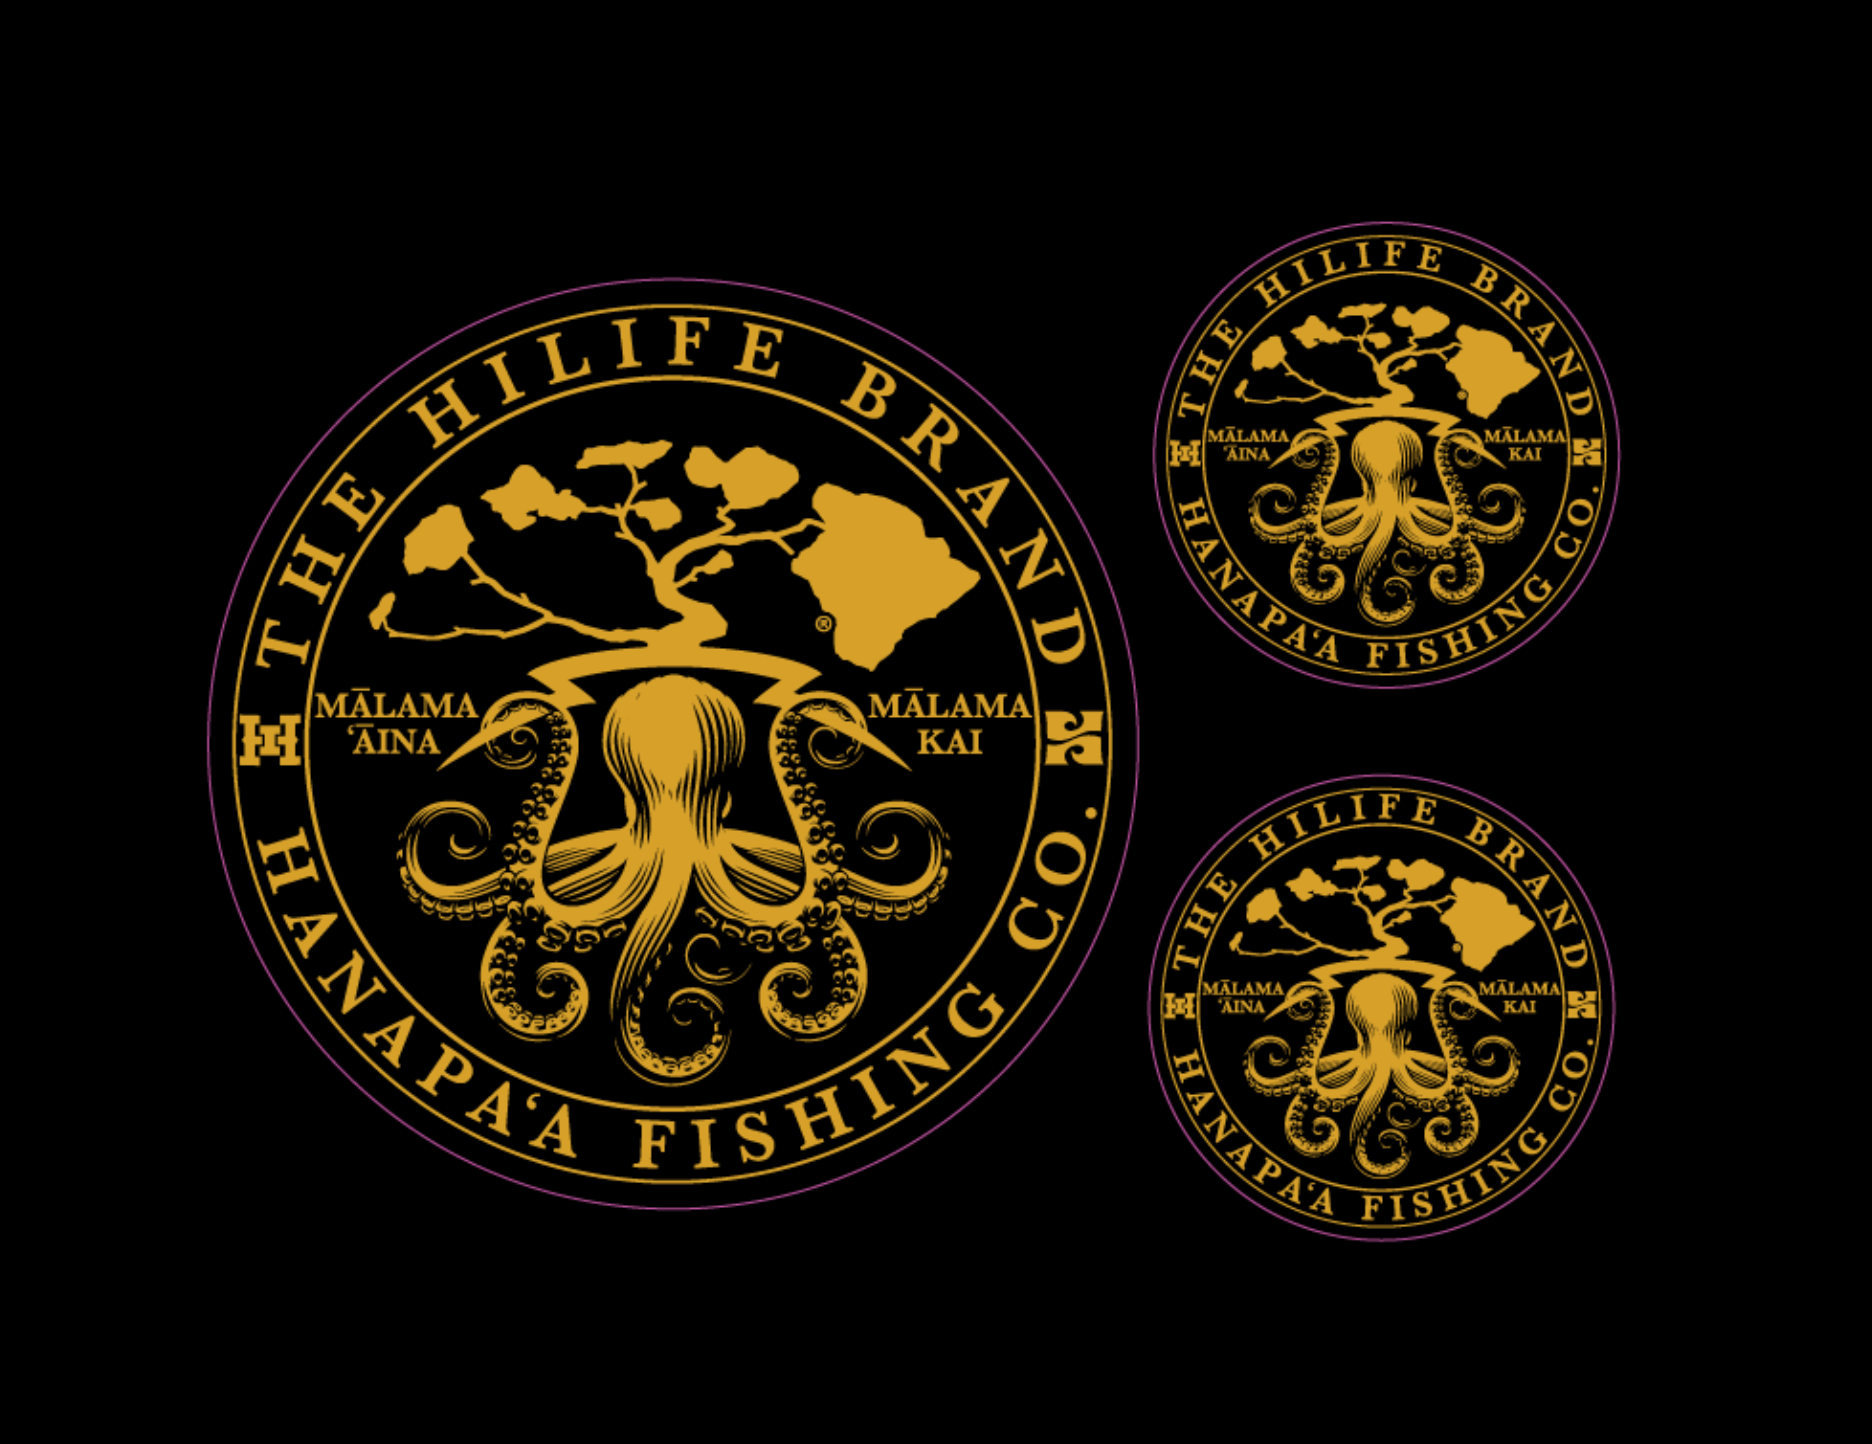 Hanapa'a Fishing Supplies – Hanapaa